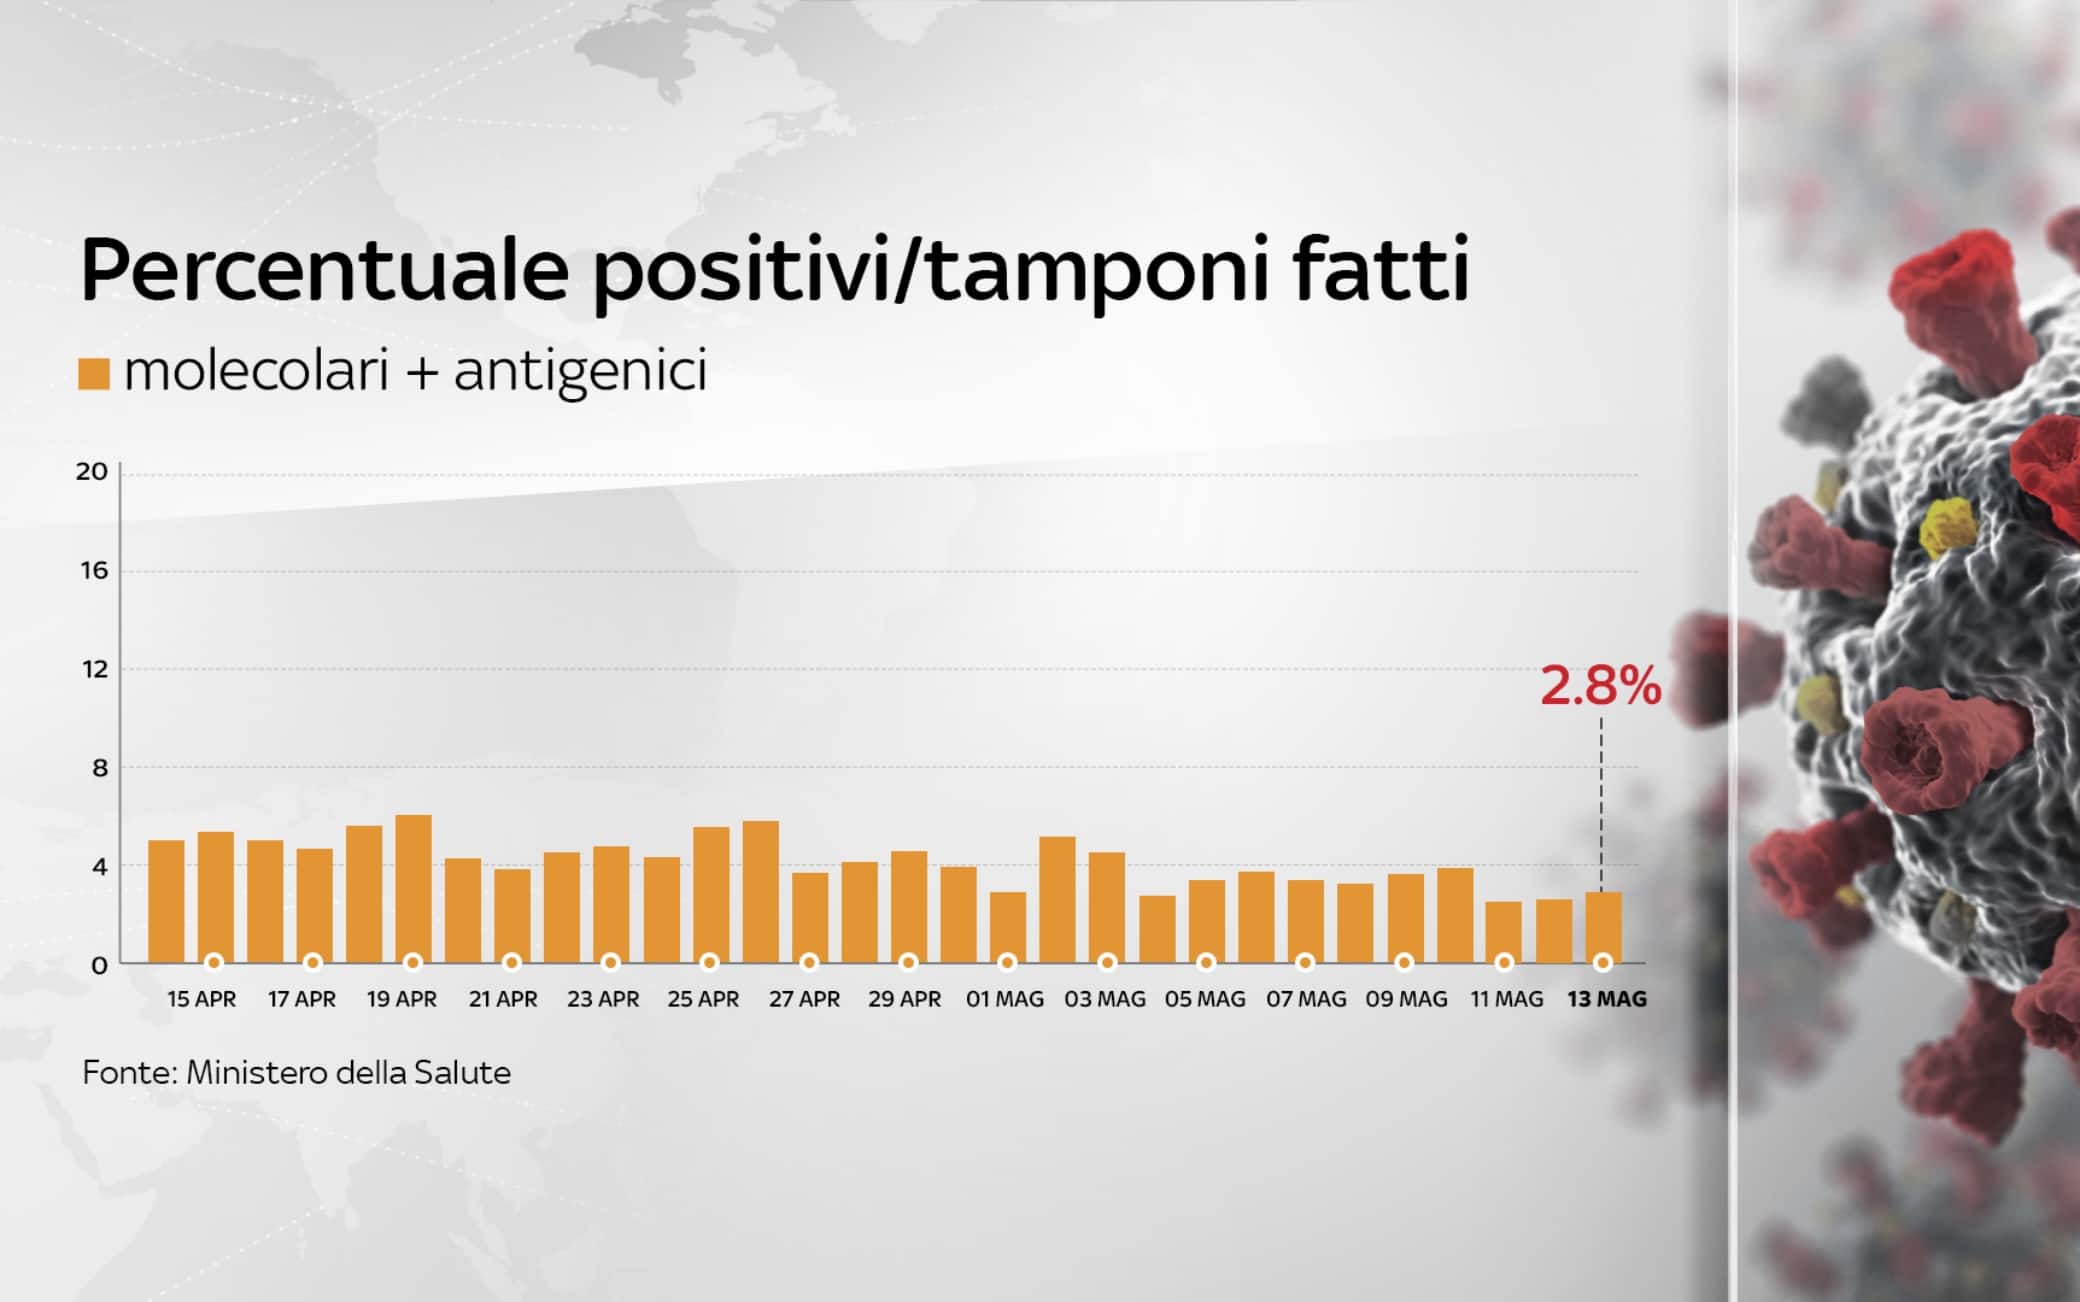 La percentuale dei positivi in Italia dal bollettino del 13 maggio